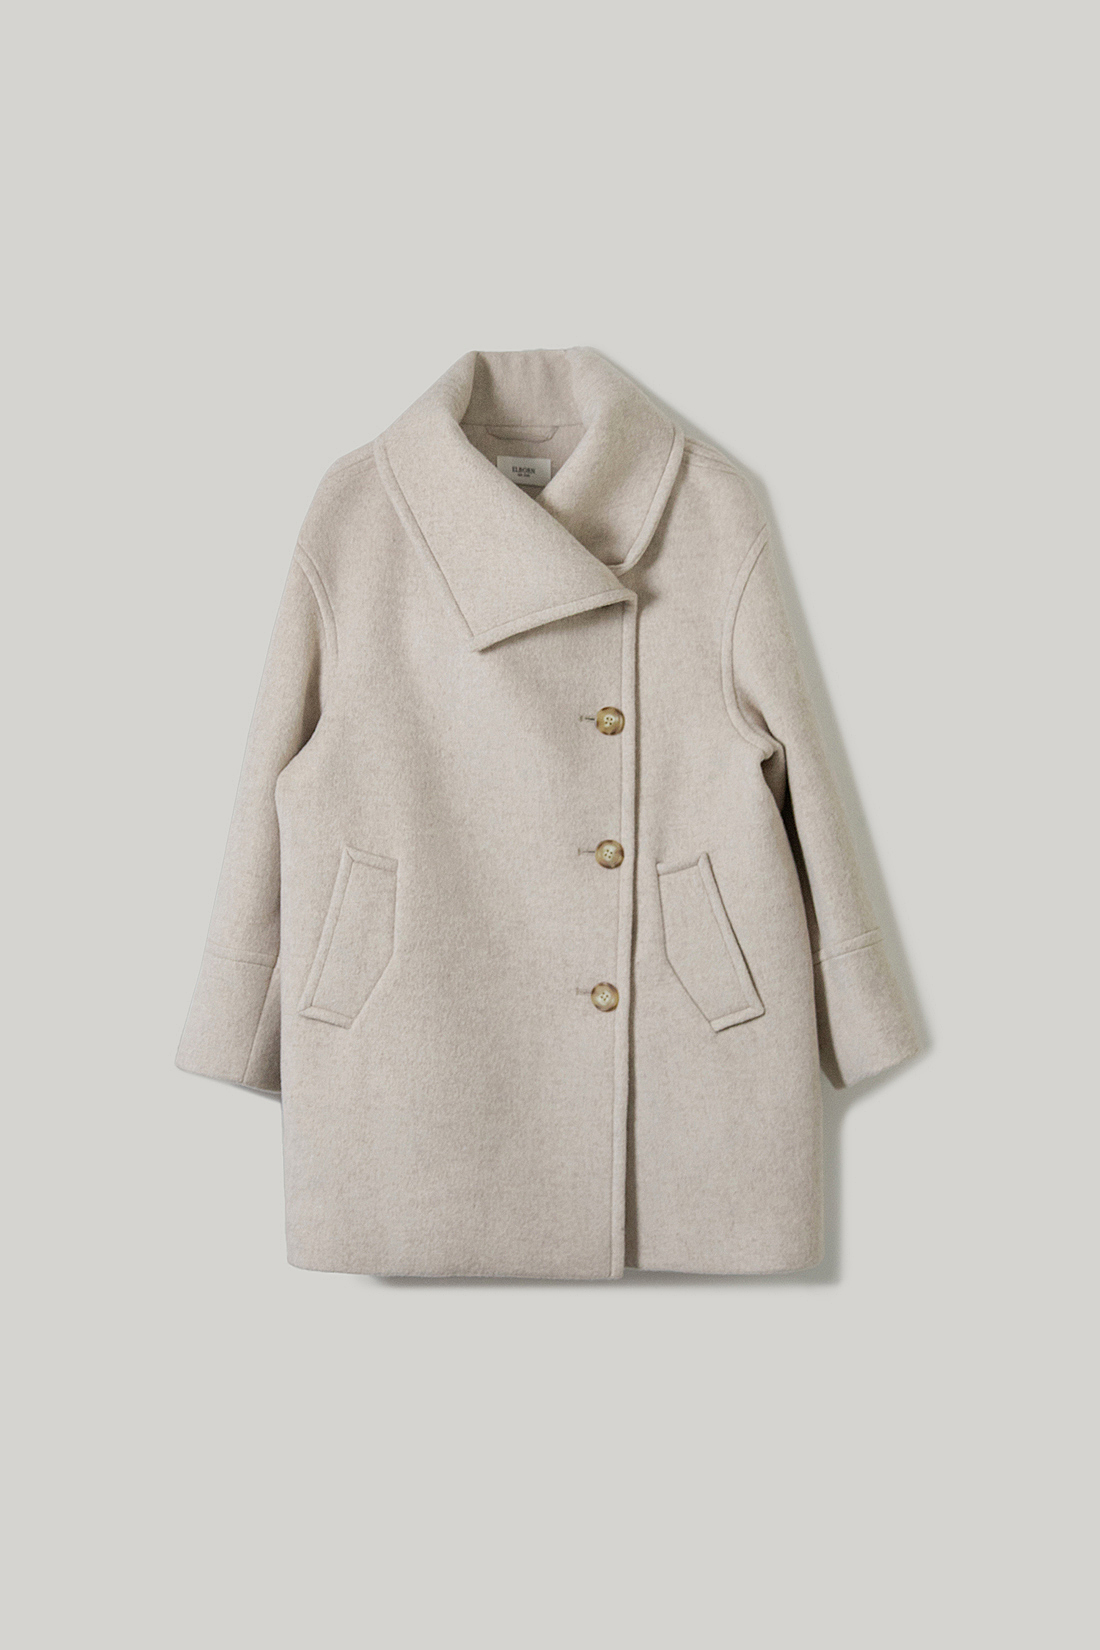 Leiva Half Coat (Cream Beige)